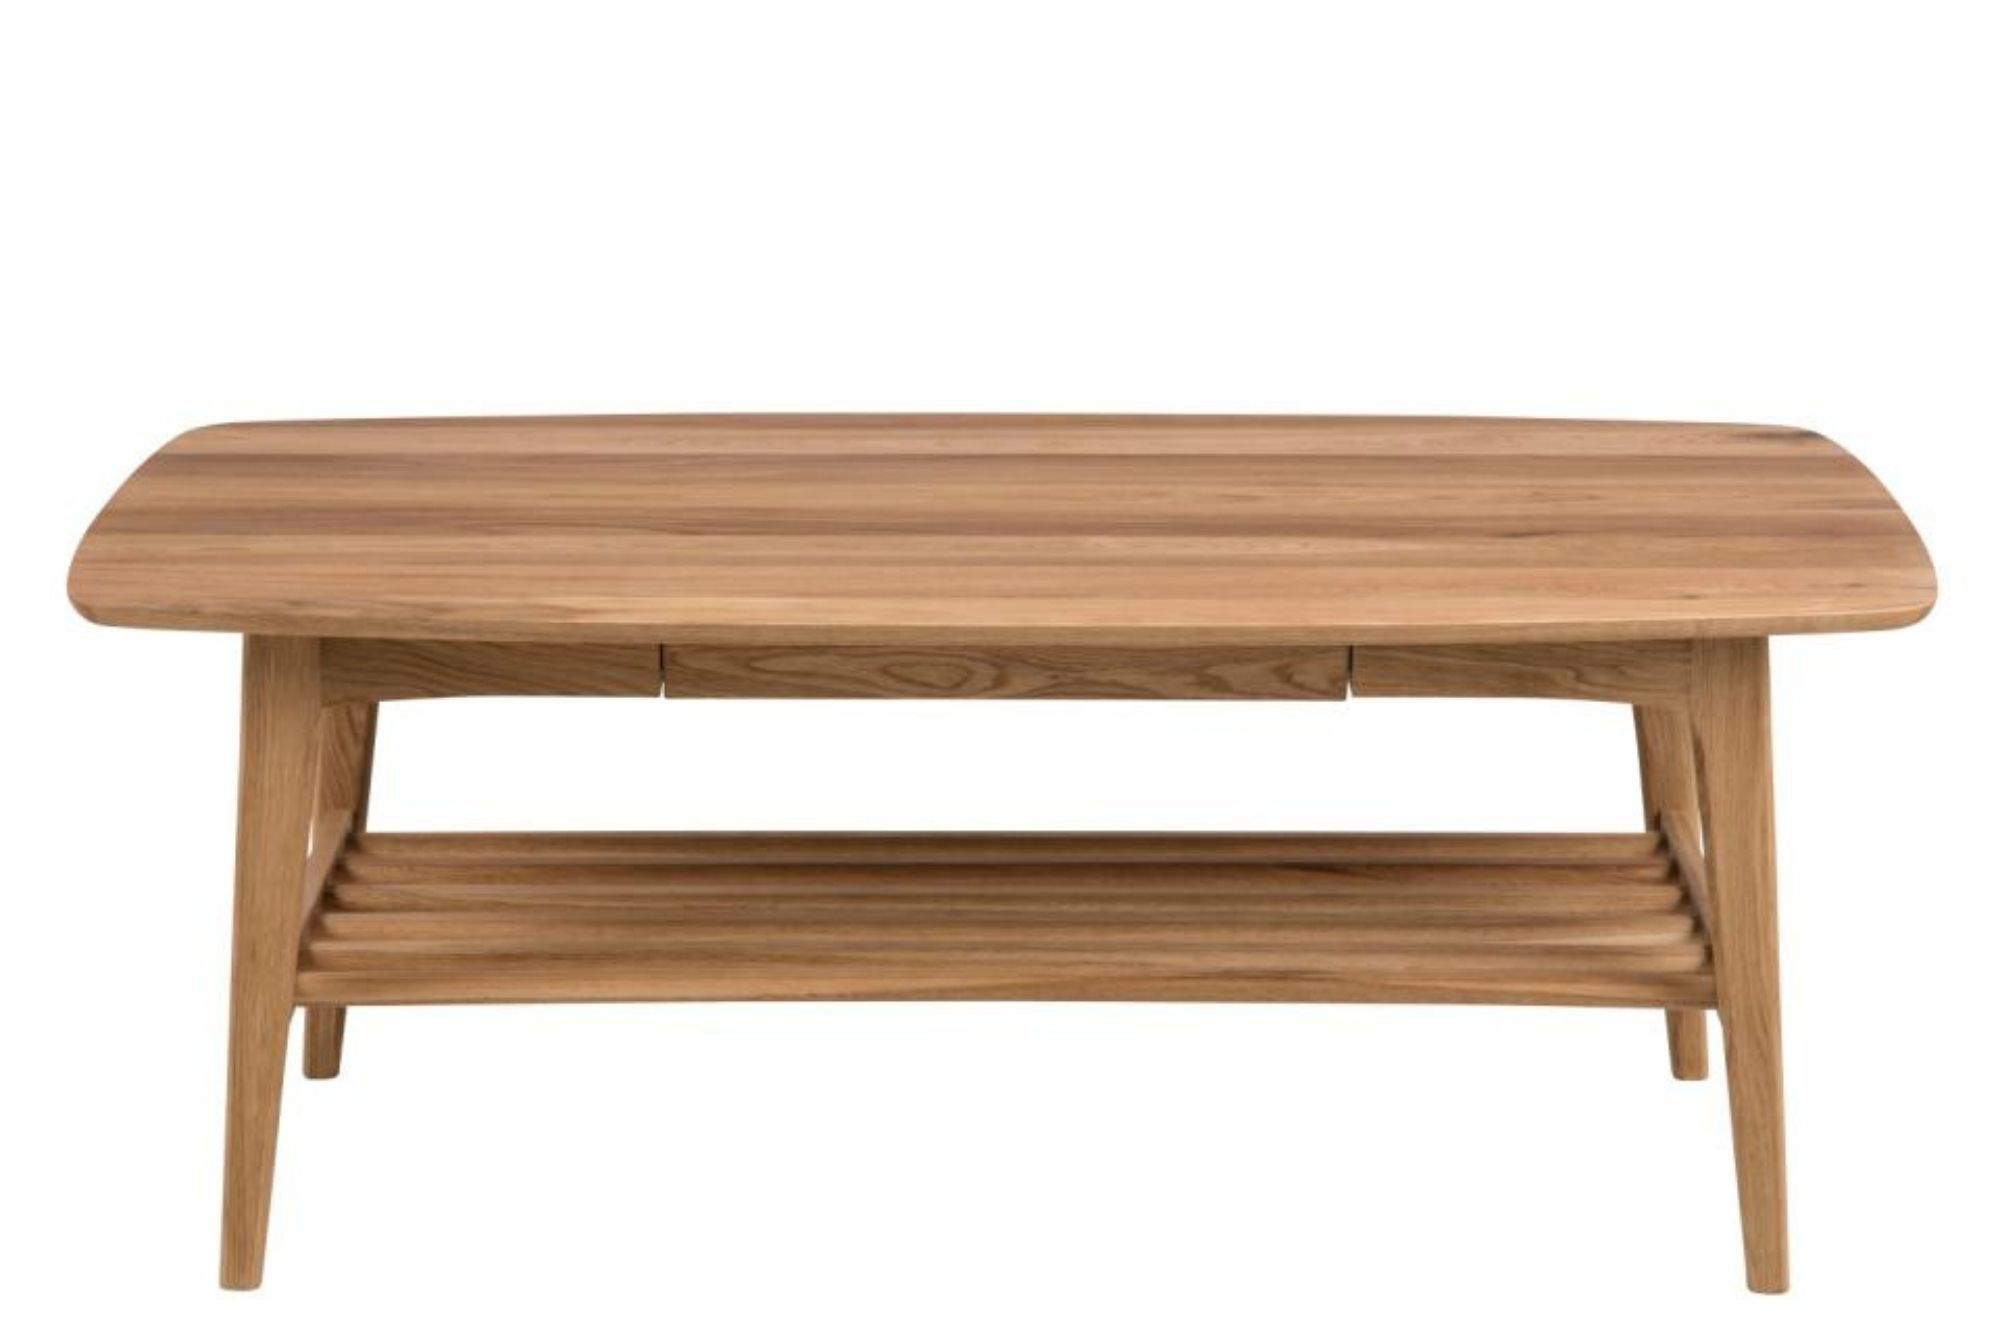 Table basse scandinave rectangulaire en bois massif avec rangement - ELEA